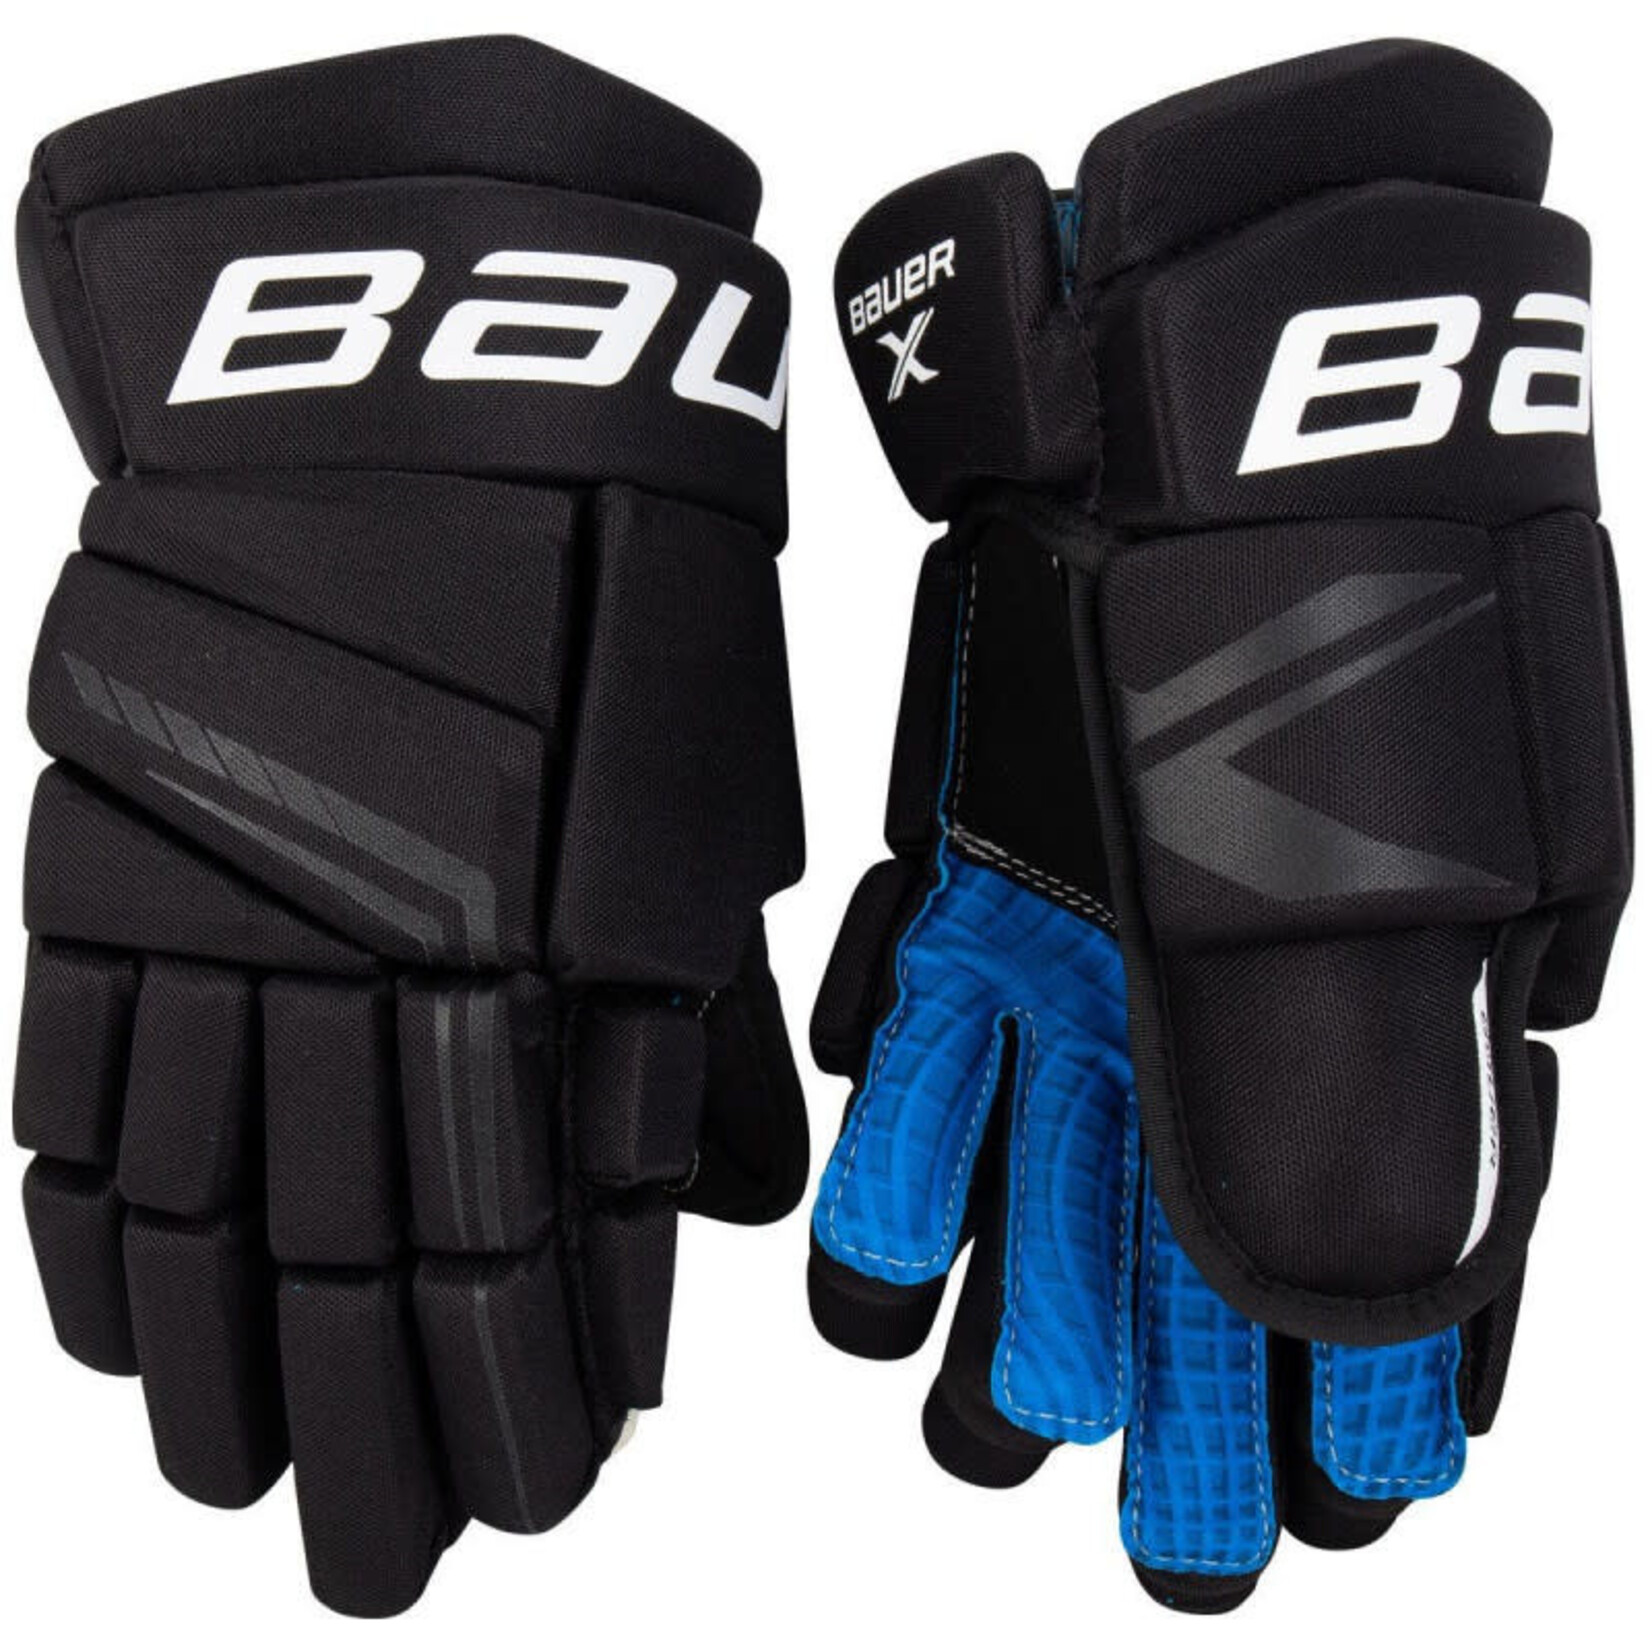 Bauer Bauer Hockey Gloves, X, Youth